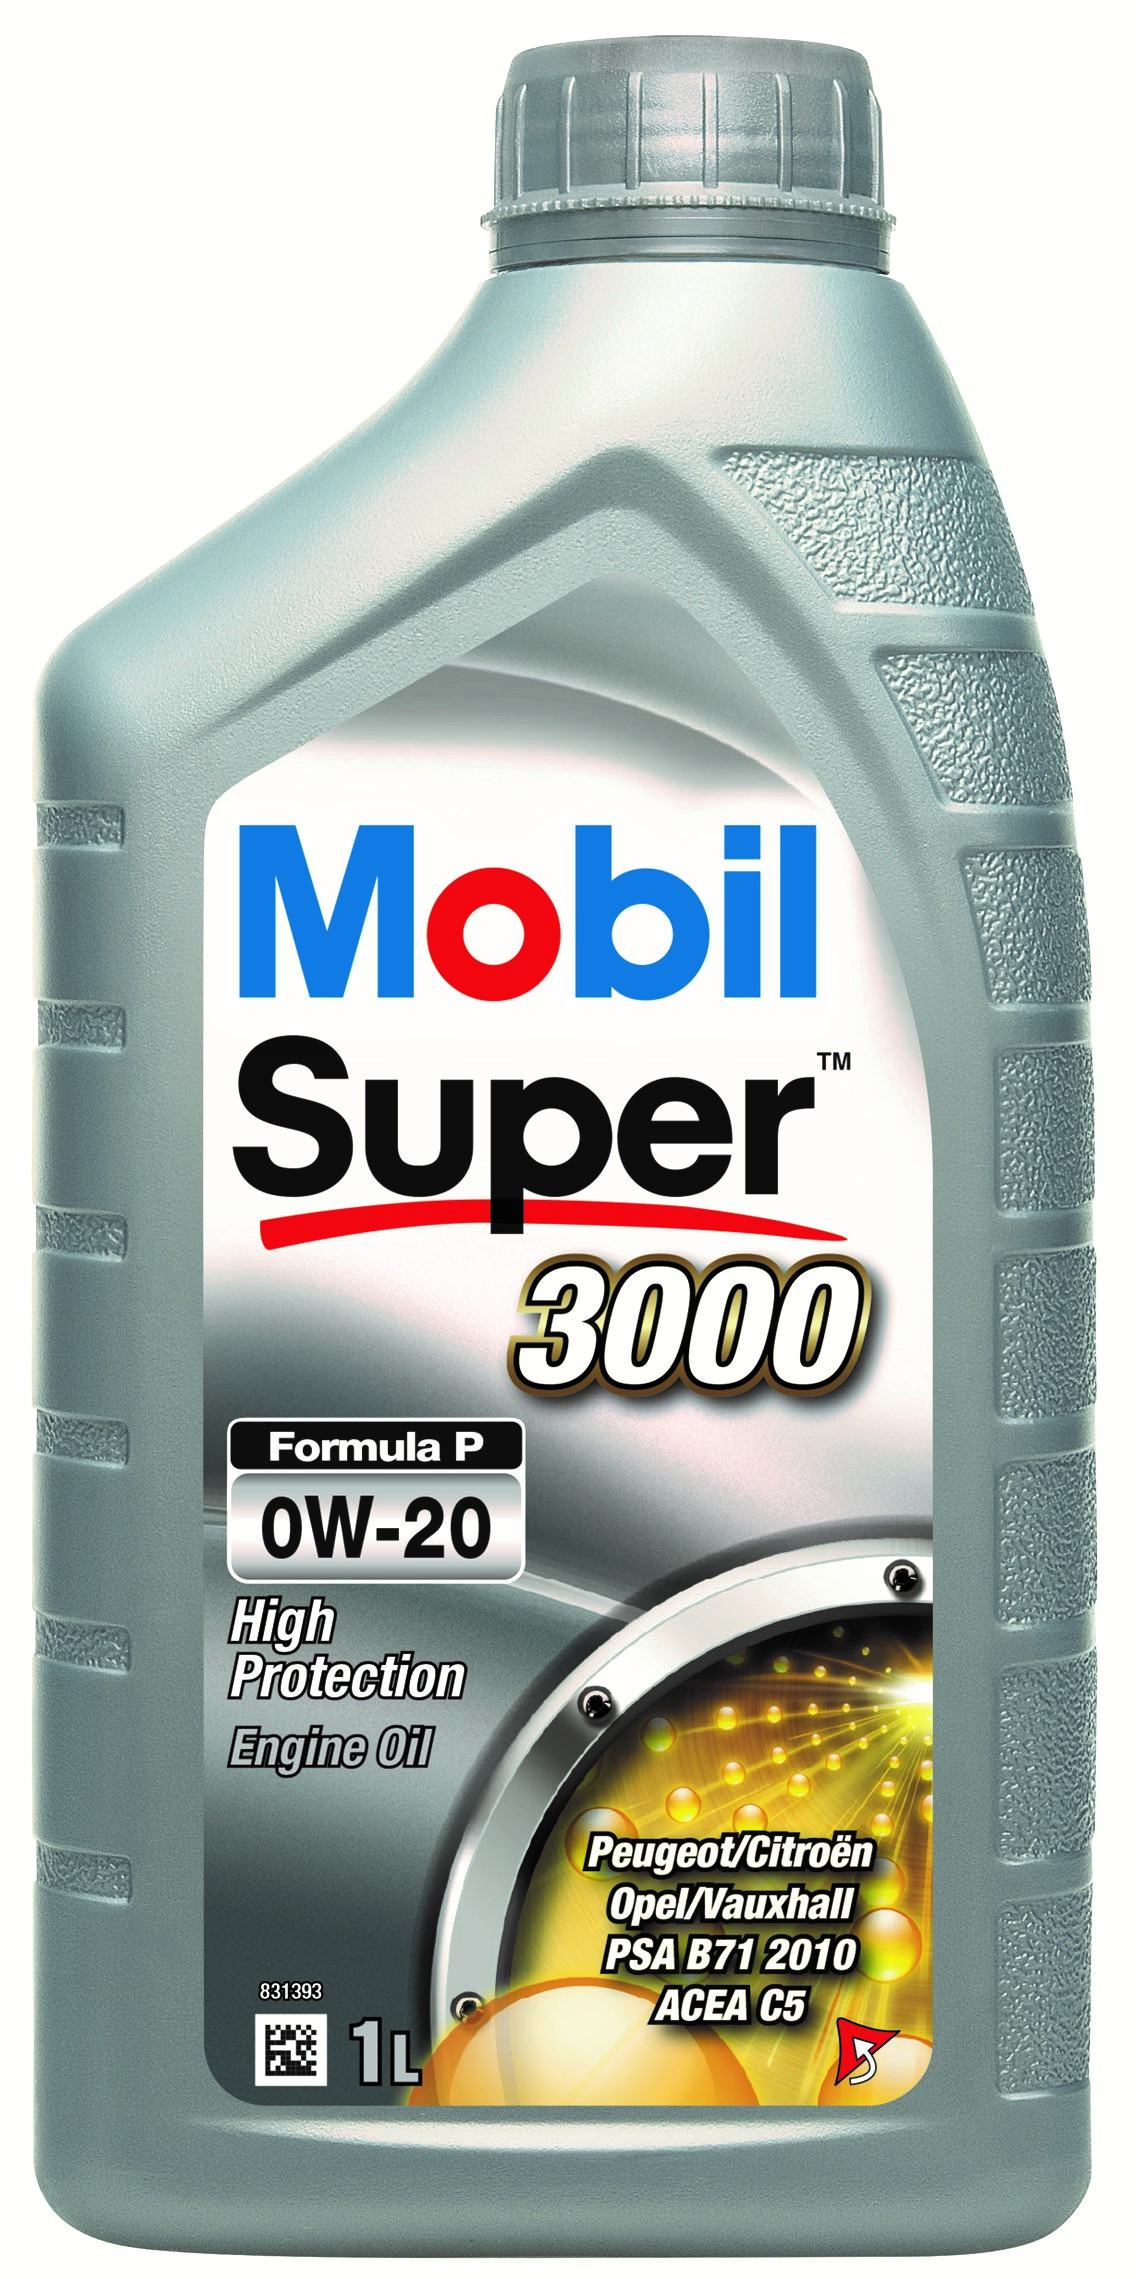 MOBIL SUPER 3000 FORMULA P 0W-20 1L